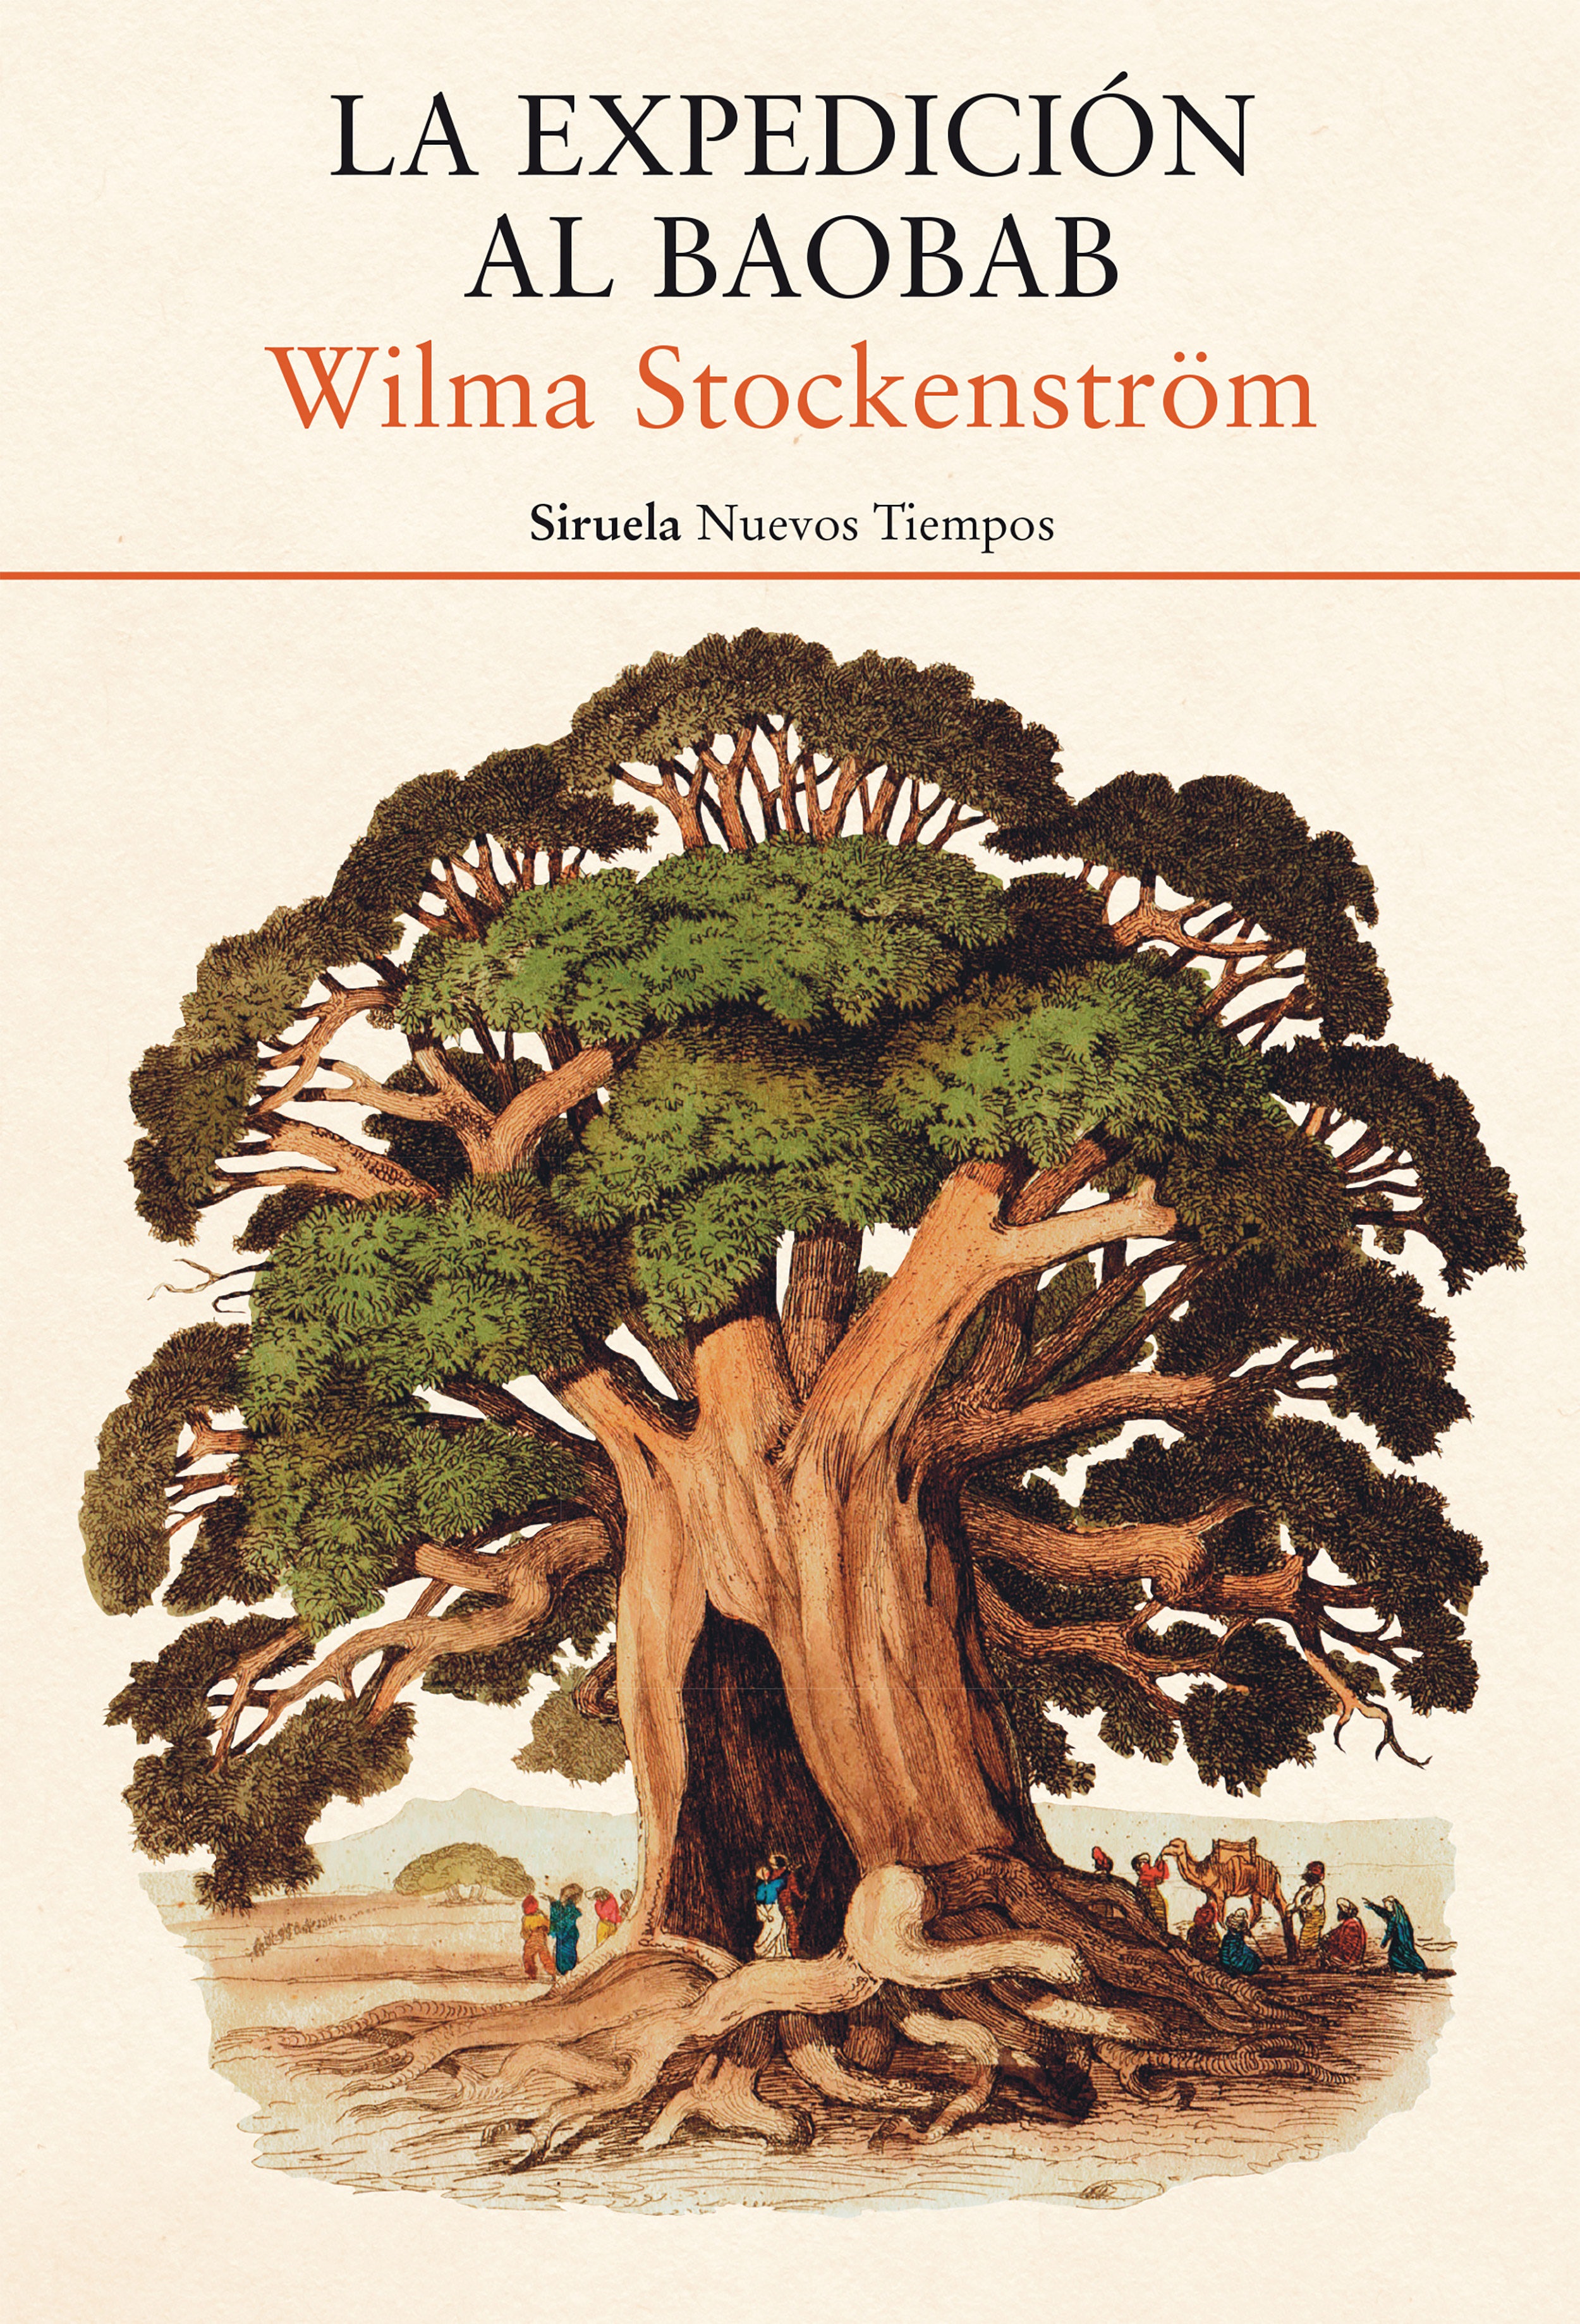 Portada de la novela «La expedición al baobab», de Wilma Stockenström